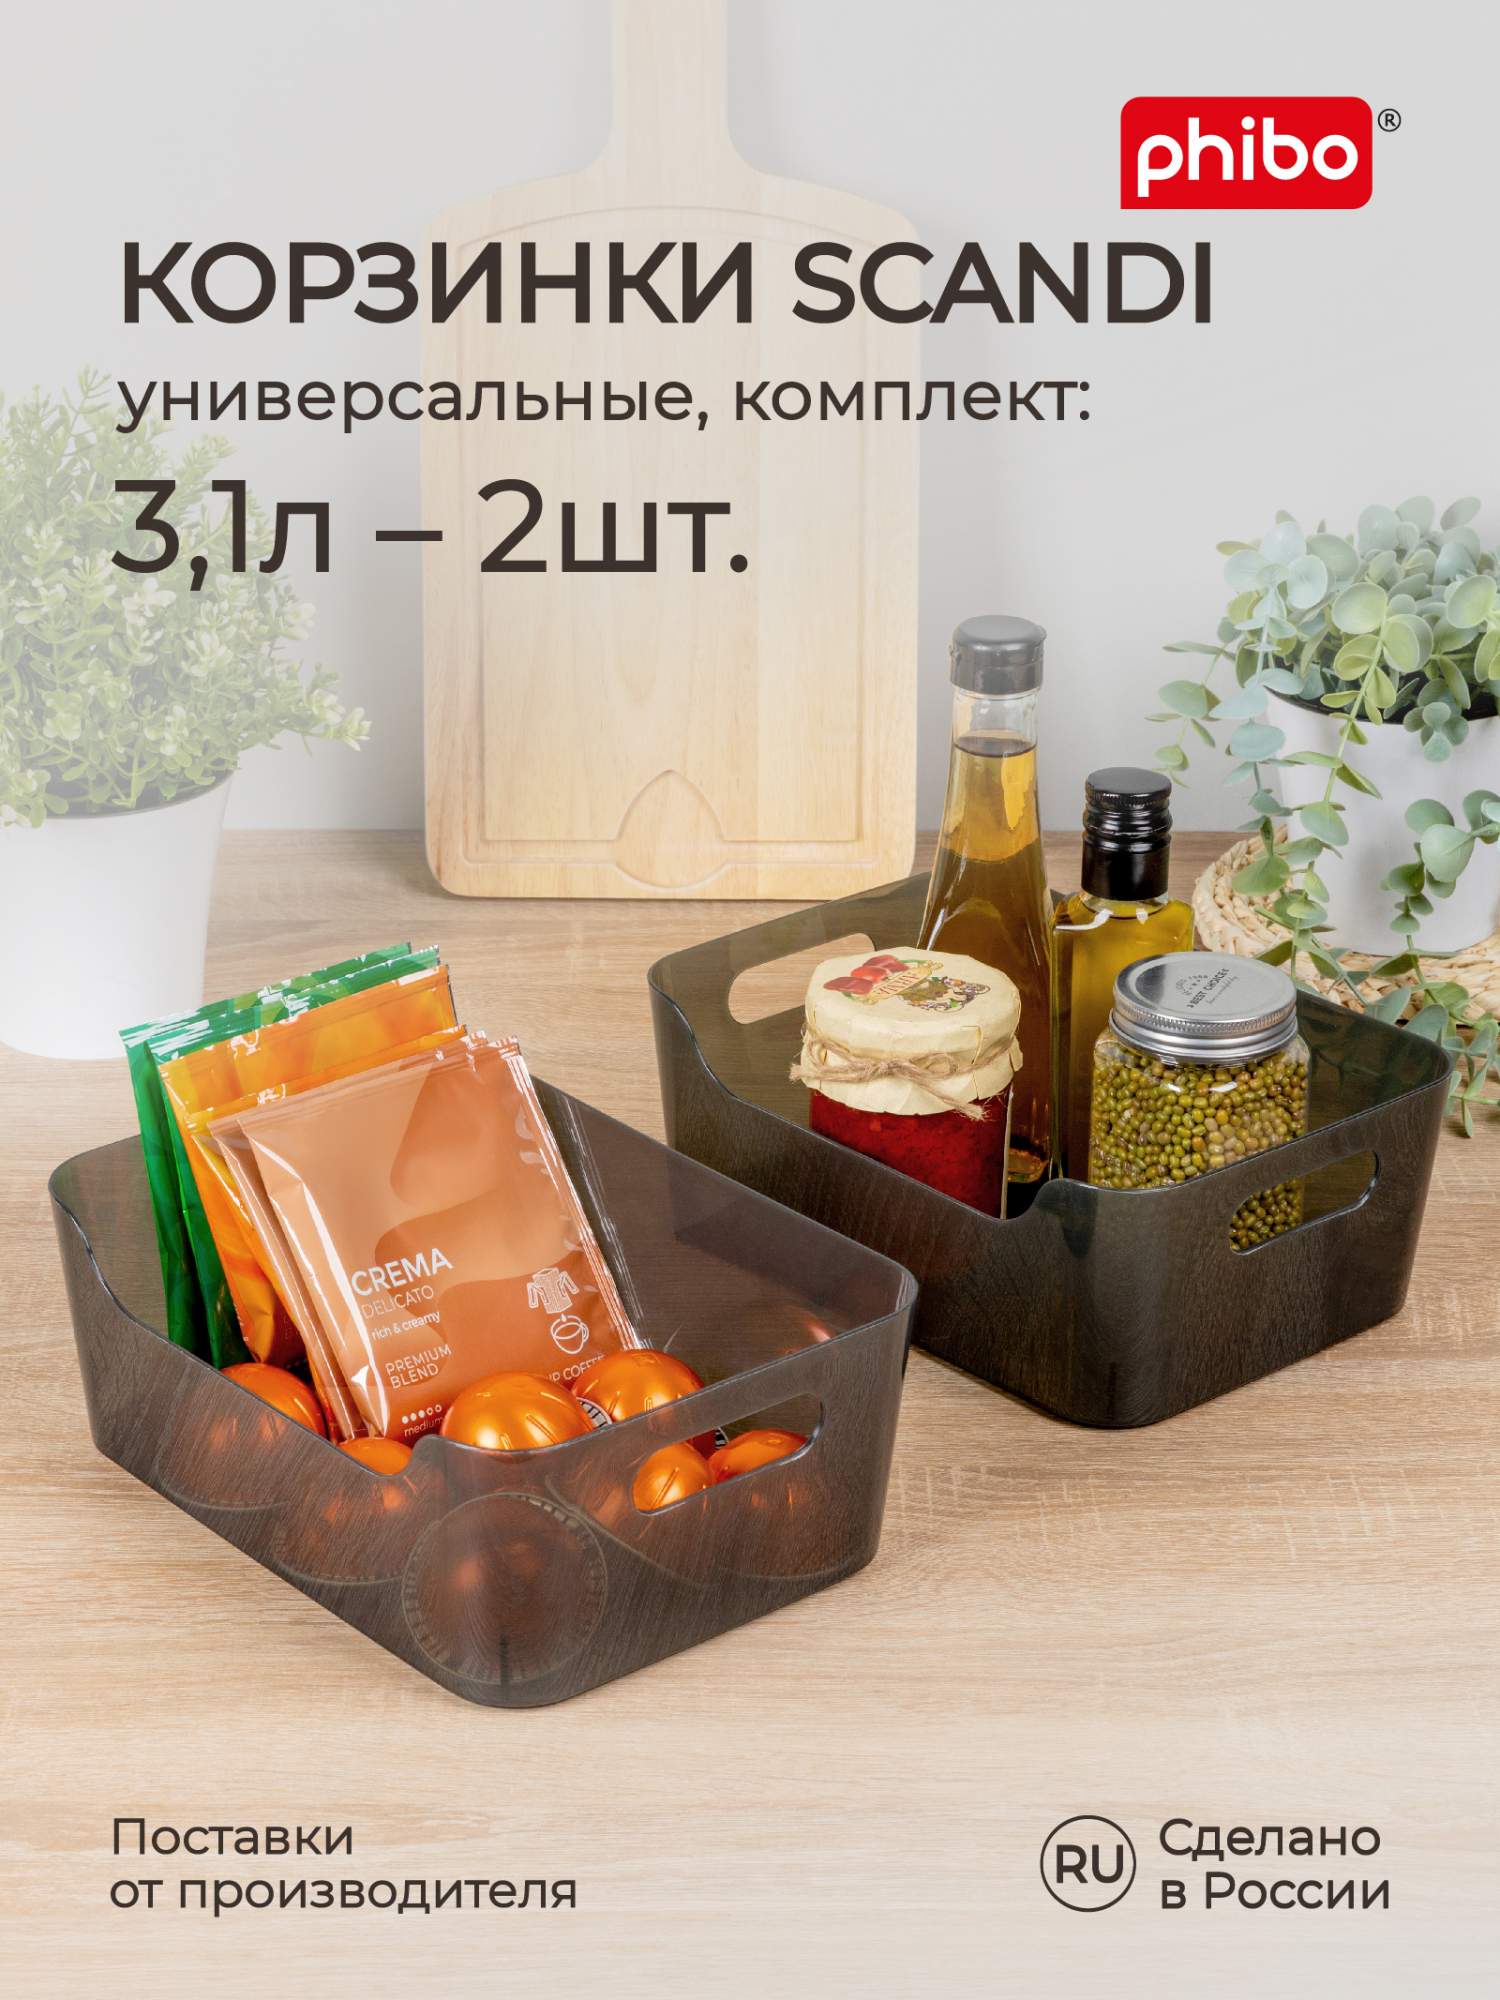 Комплект корзинок Phibo универсальных для холодильника Scandi 3,1 л, 2 шт